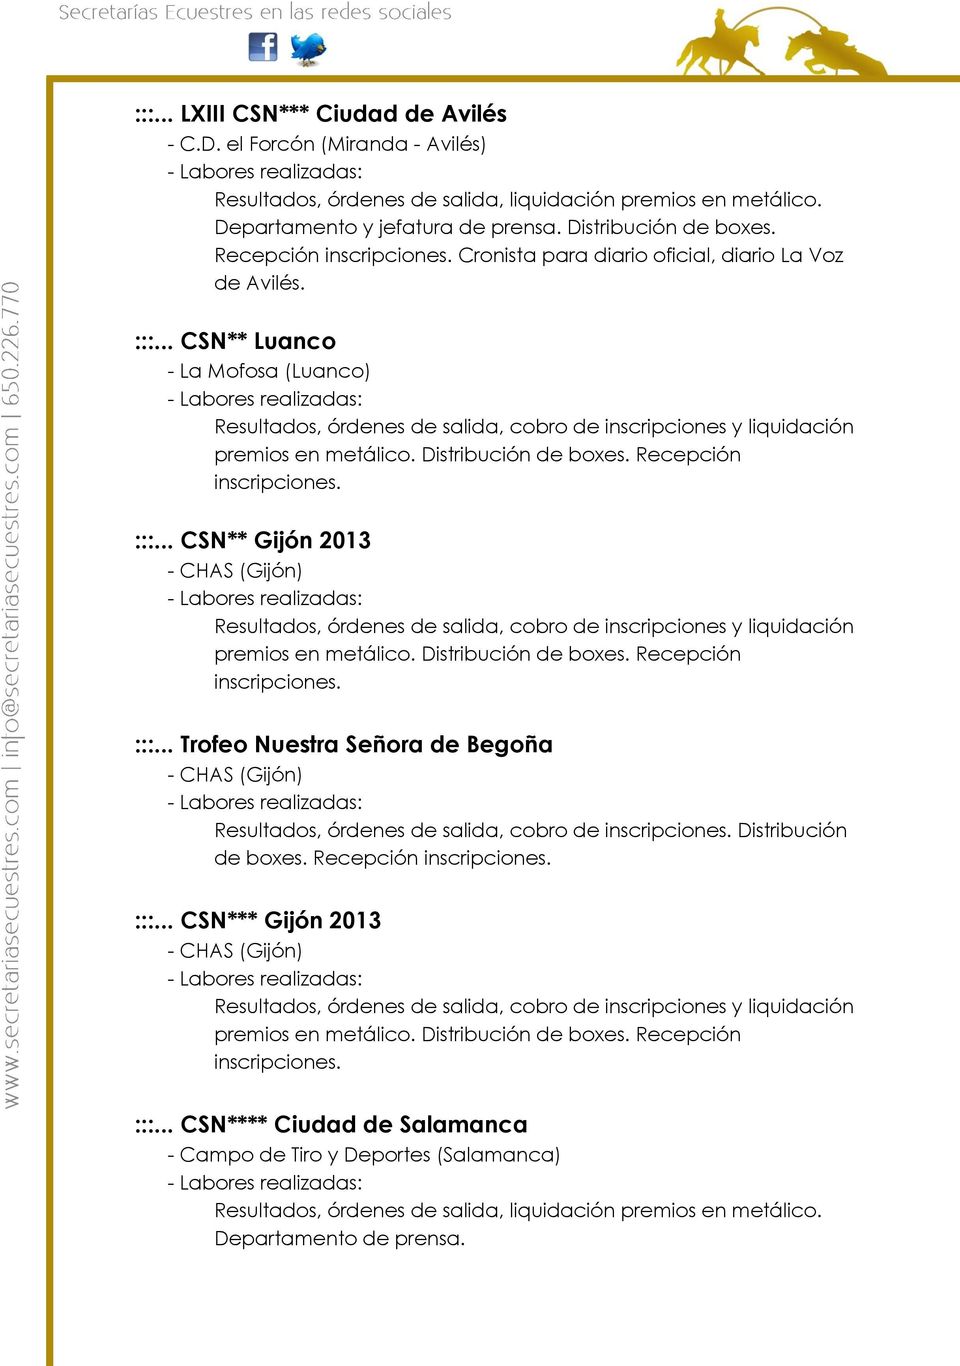 Distribución de boxes. Recepción inscripciones. :::... CSN** Gijón 2013 - CHAS (Gijón) Resultados, órdenes de salida, cobro de inscripciones y liquidación premios en metálico. Distribución de boxes.